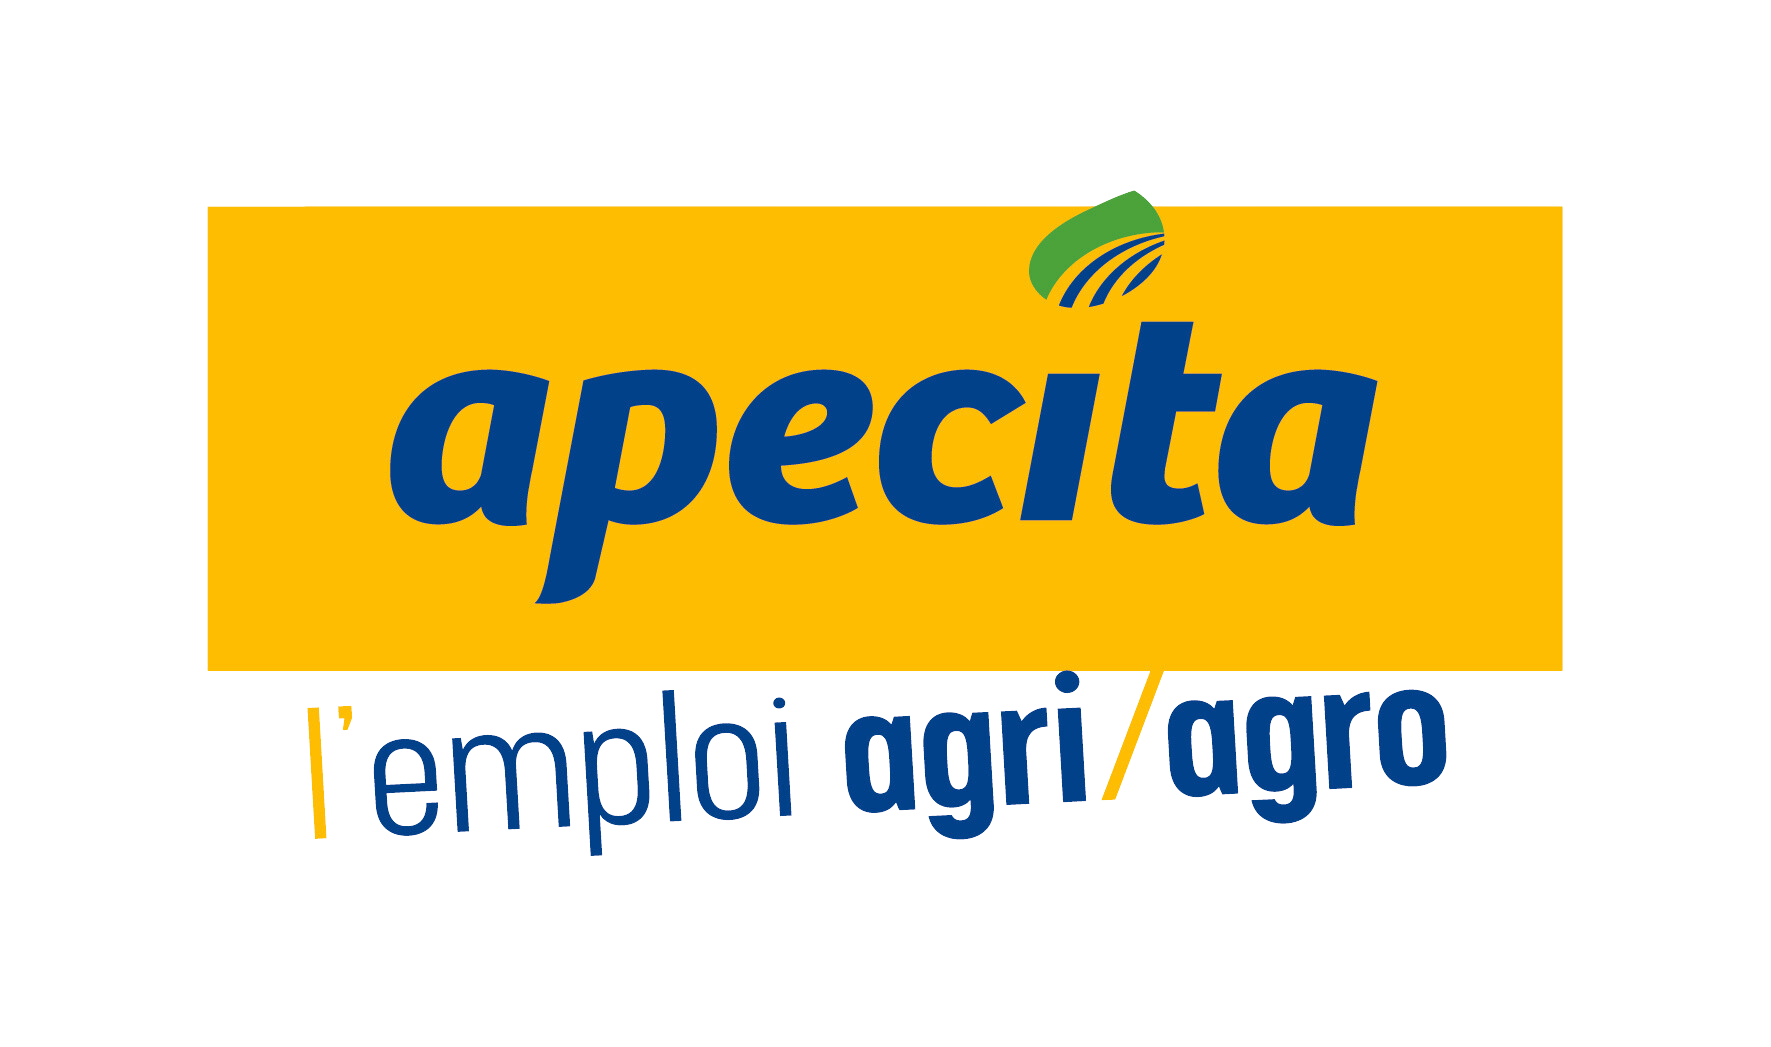 Logo Apecita